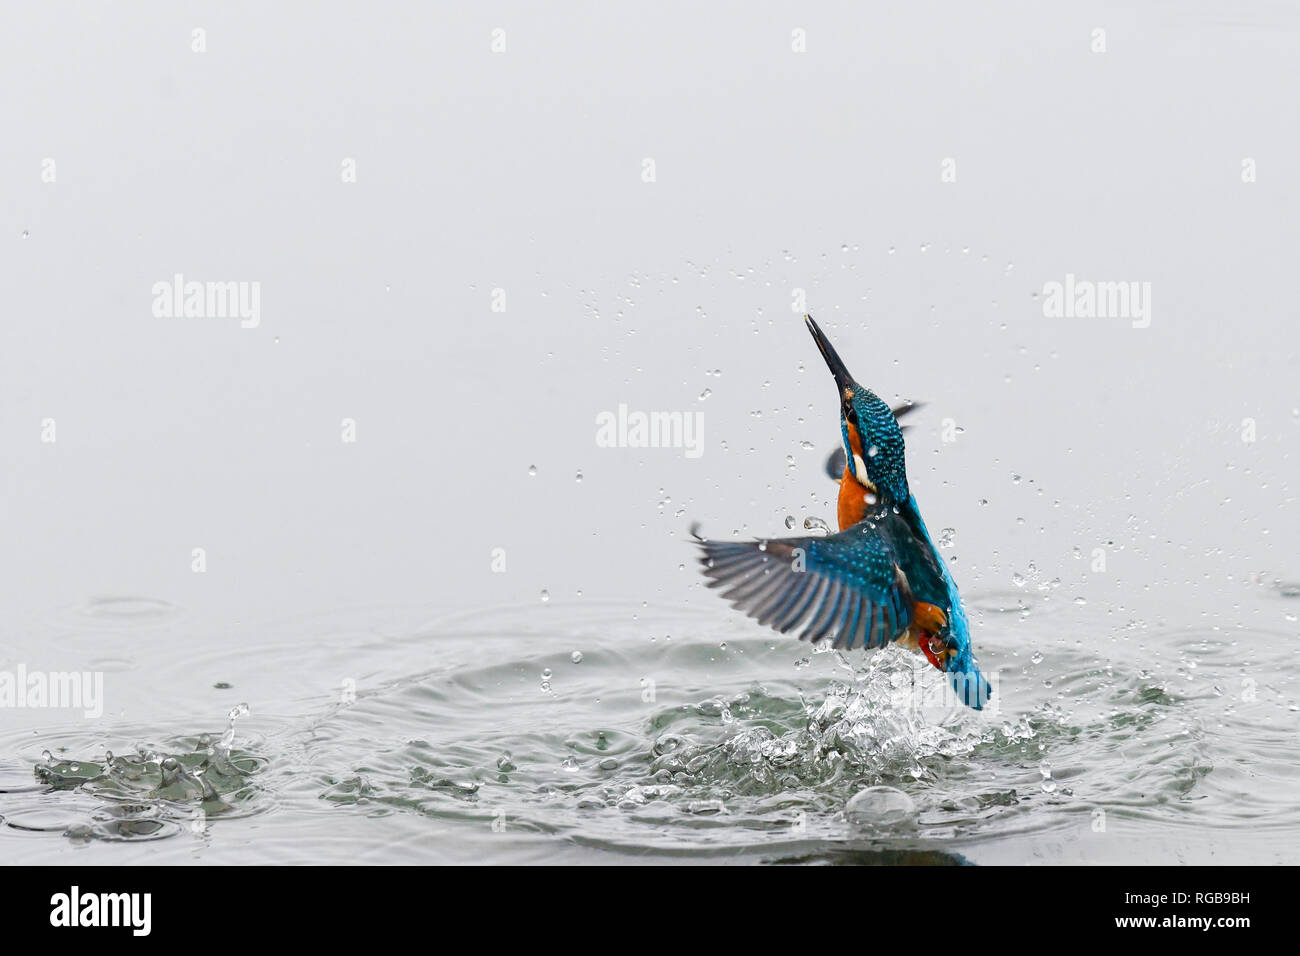 La acción Cerrar Foto de un martín pescador (Alcedo atthis). También conocido como el martín pescador, Eurasia y el río martín pescador. Foto de stock